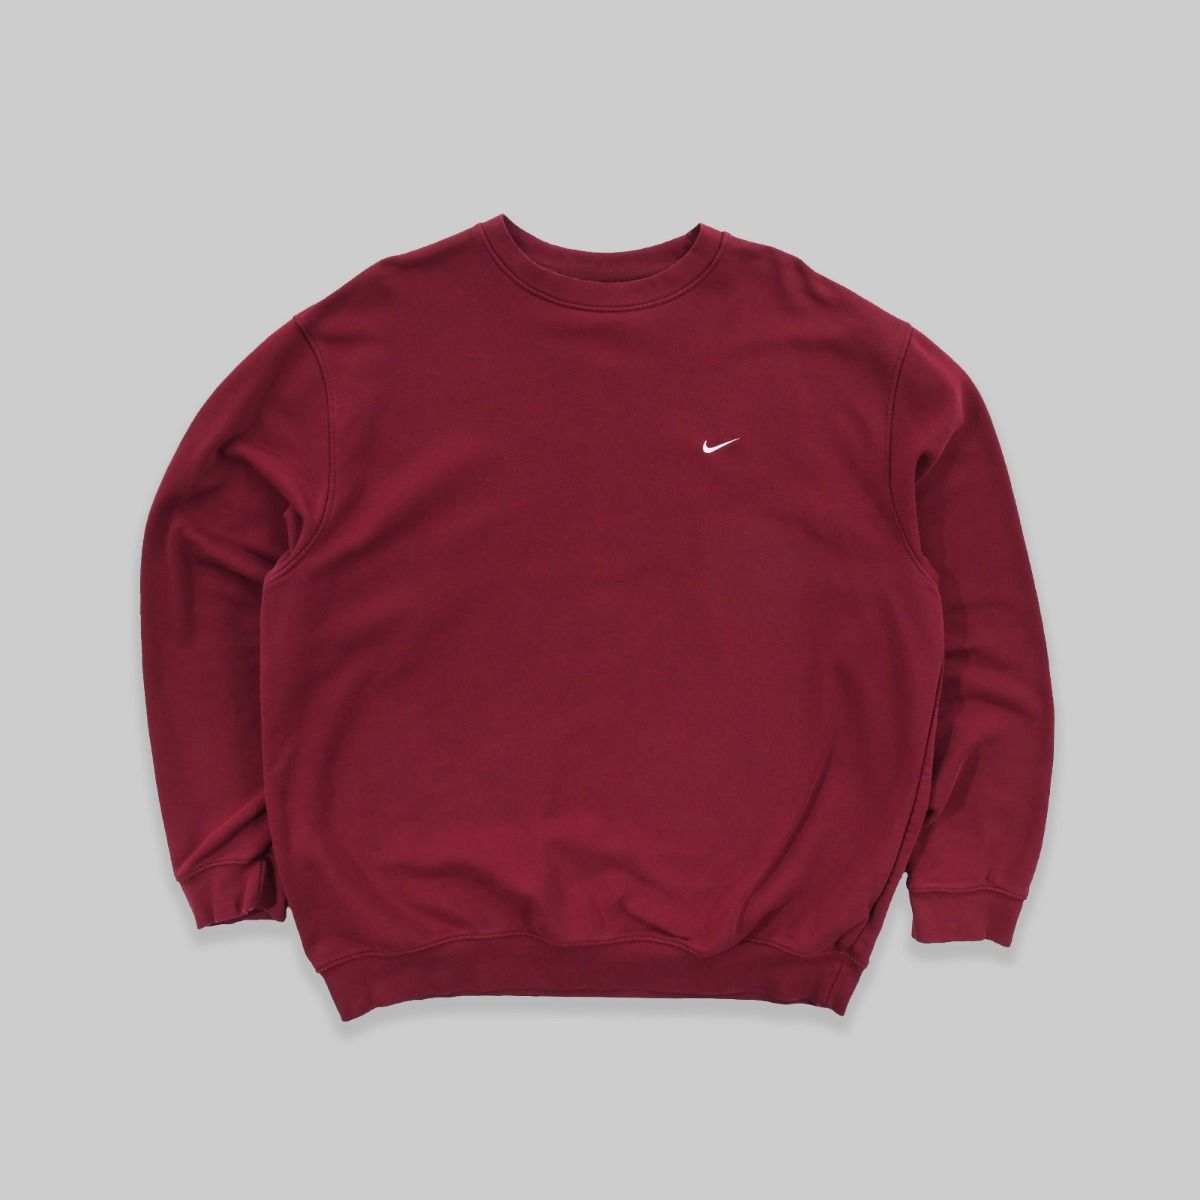 Nike Early 2000s Burgundy Sweatshirt